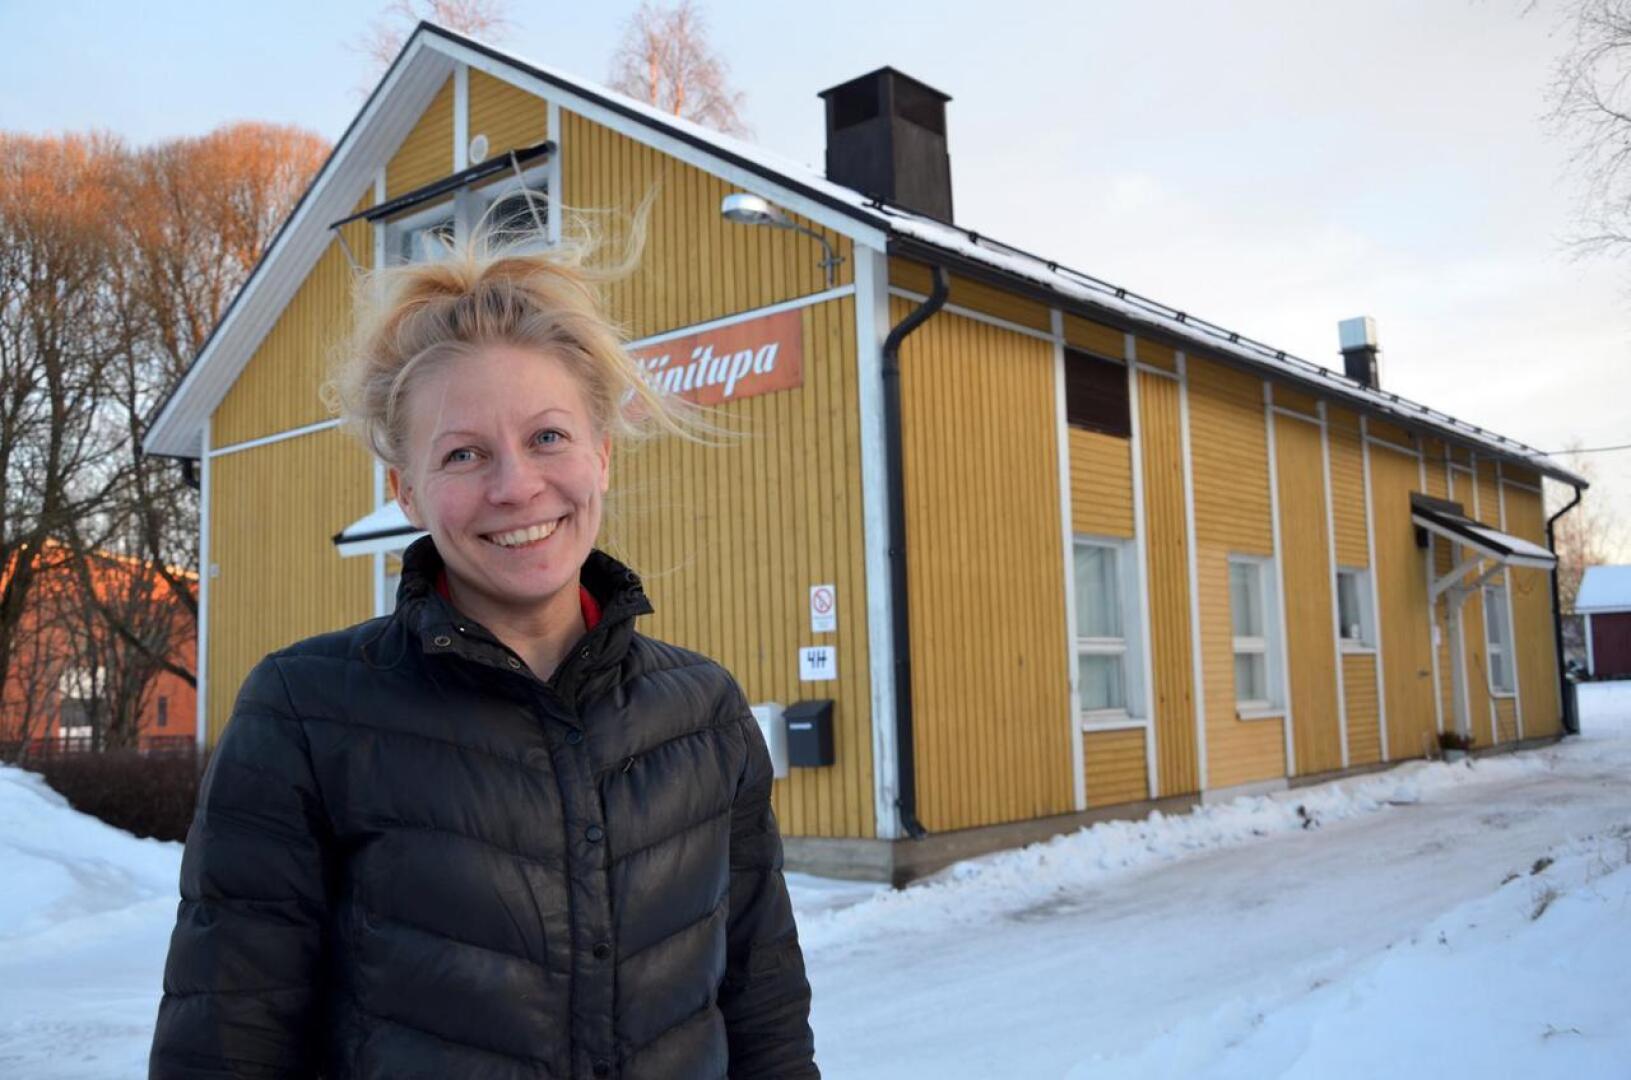 Kaustisen 4H-yhdistyksellä on nyt oma kokoontumispaikka Pelimannitorin kupeessa sijaitsevassa keltaisessa talossa. Toiminnanjohtaja Kaija Lacström lupaa, että kerhotilaa voivat hyödyntää myös muut yhdistykset.